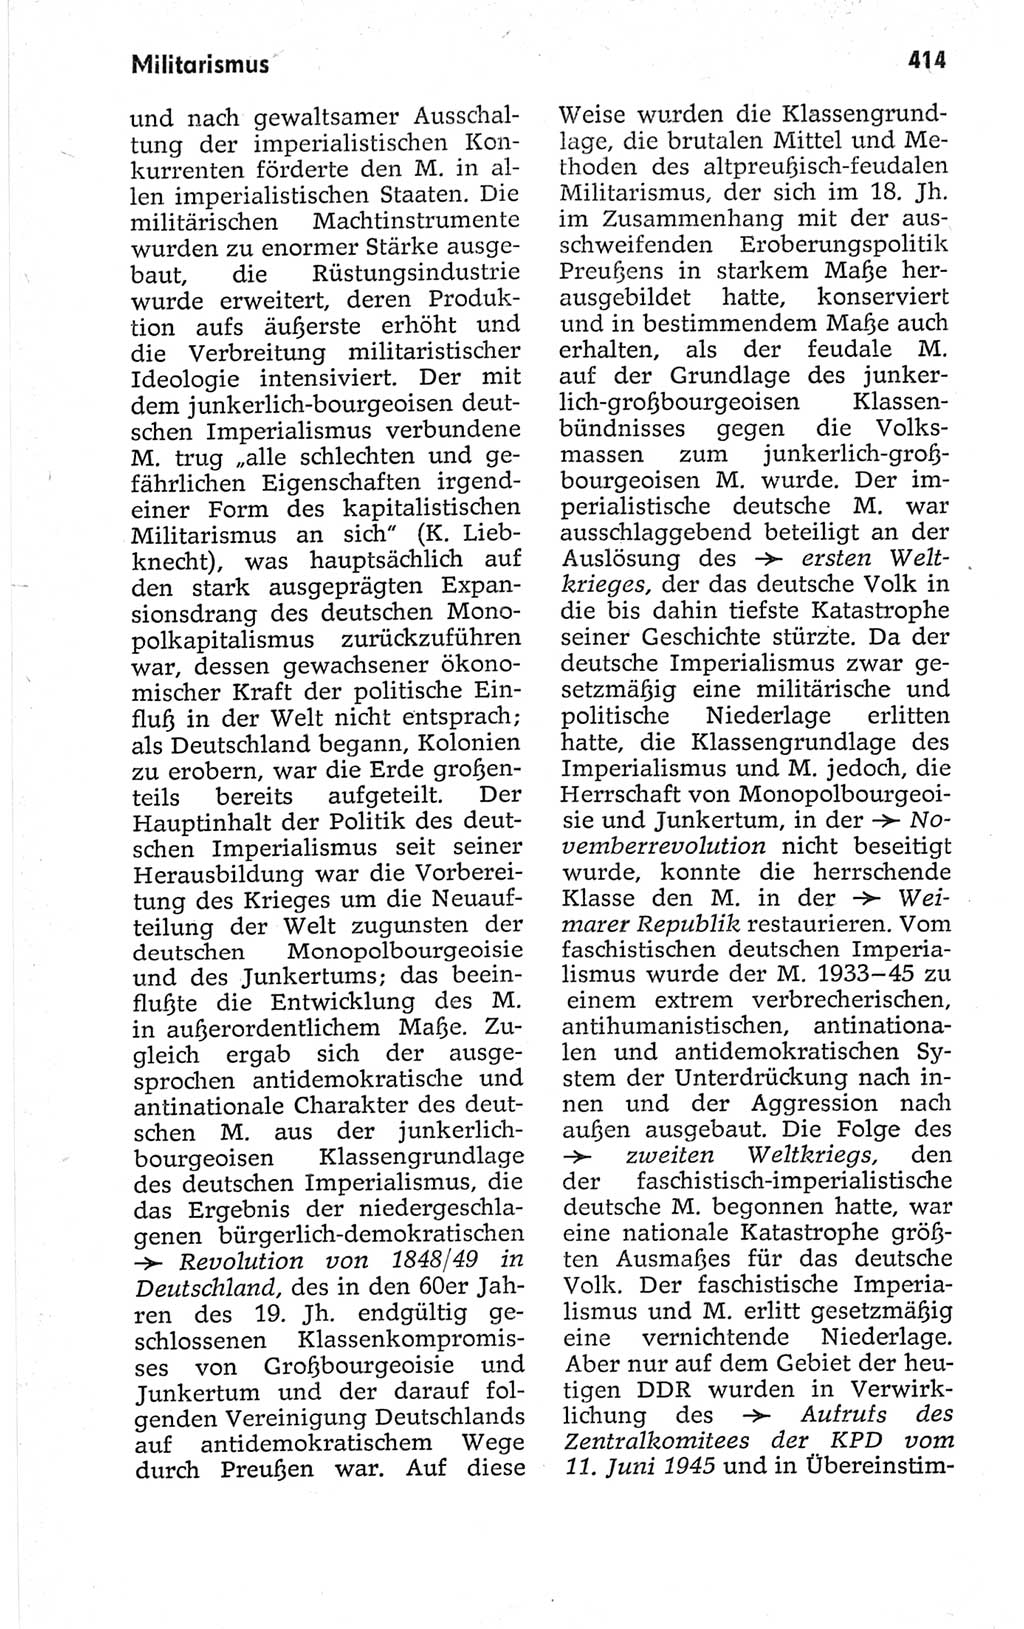 Kleines politisches Wörterbuch [Deutsche Demokratische Republik (DDR)] 1967, Seite 414 (Kl. pol. Wb. DDR 1967, S. 414)